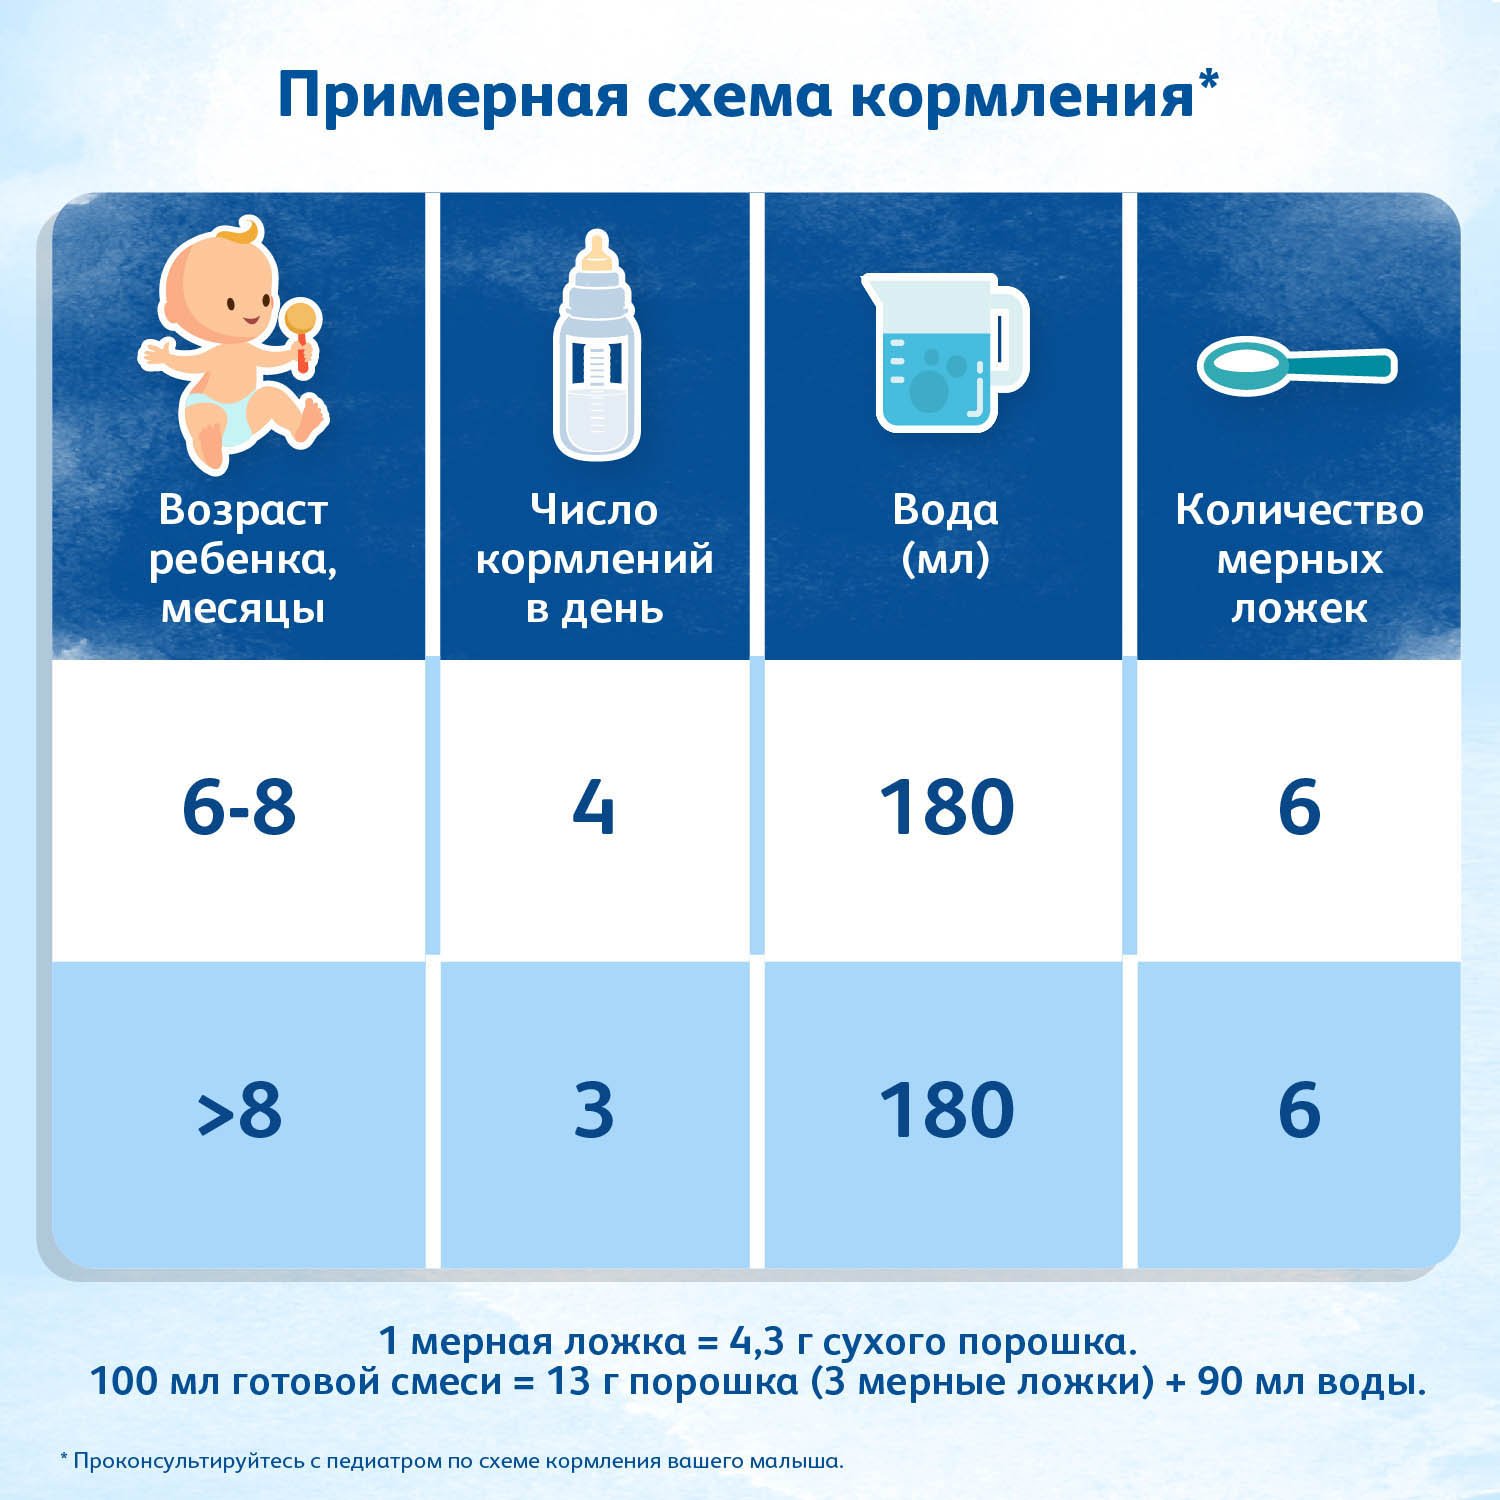 Sữa bột Friso Nga số 2 - 800g (cho bé từ 6-12 tháng tuổi)